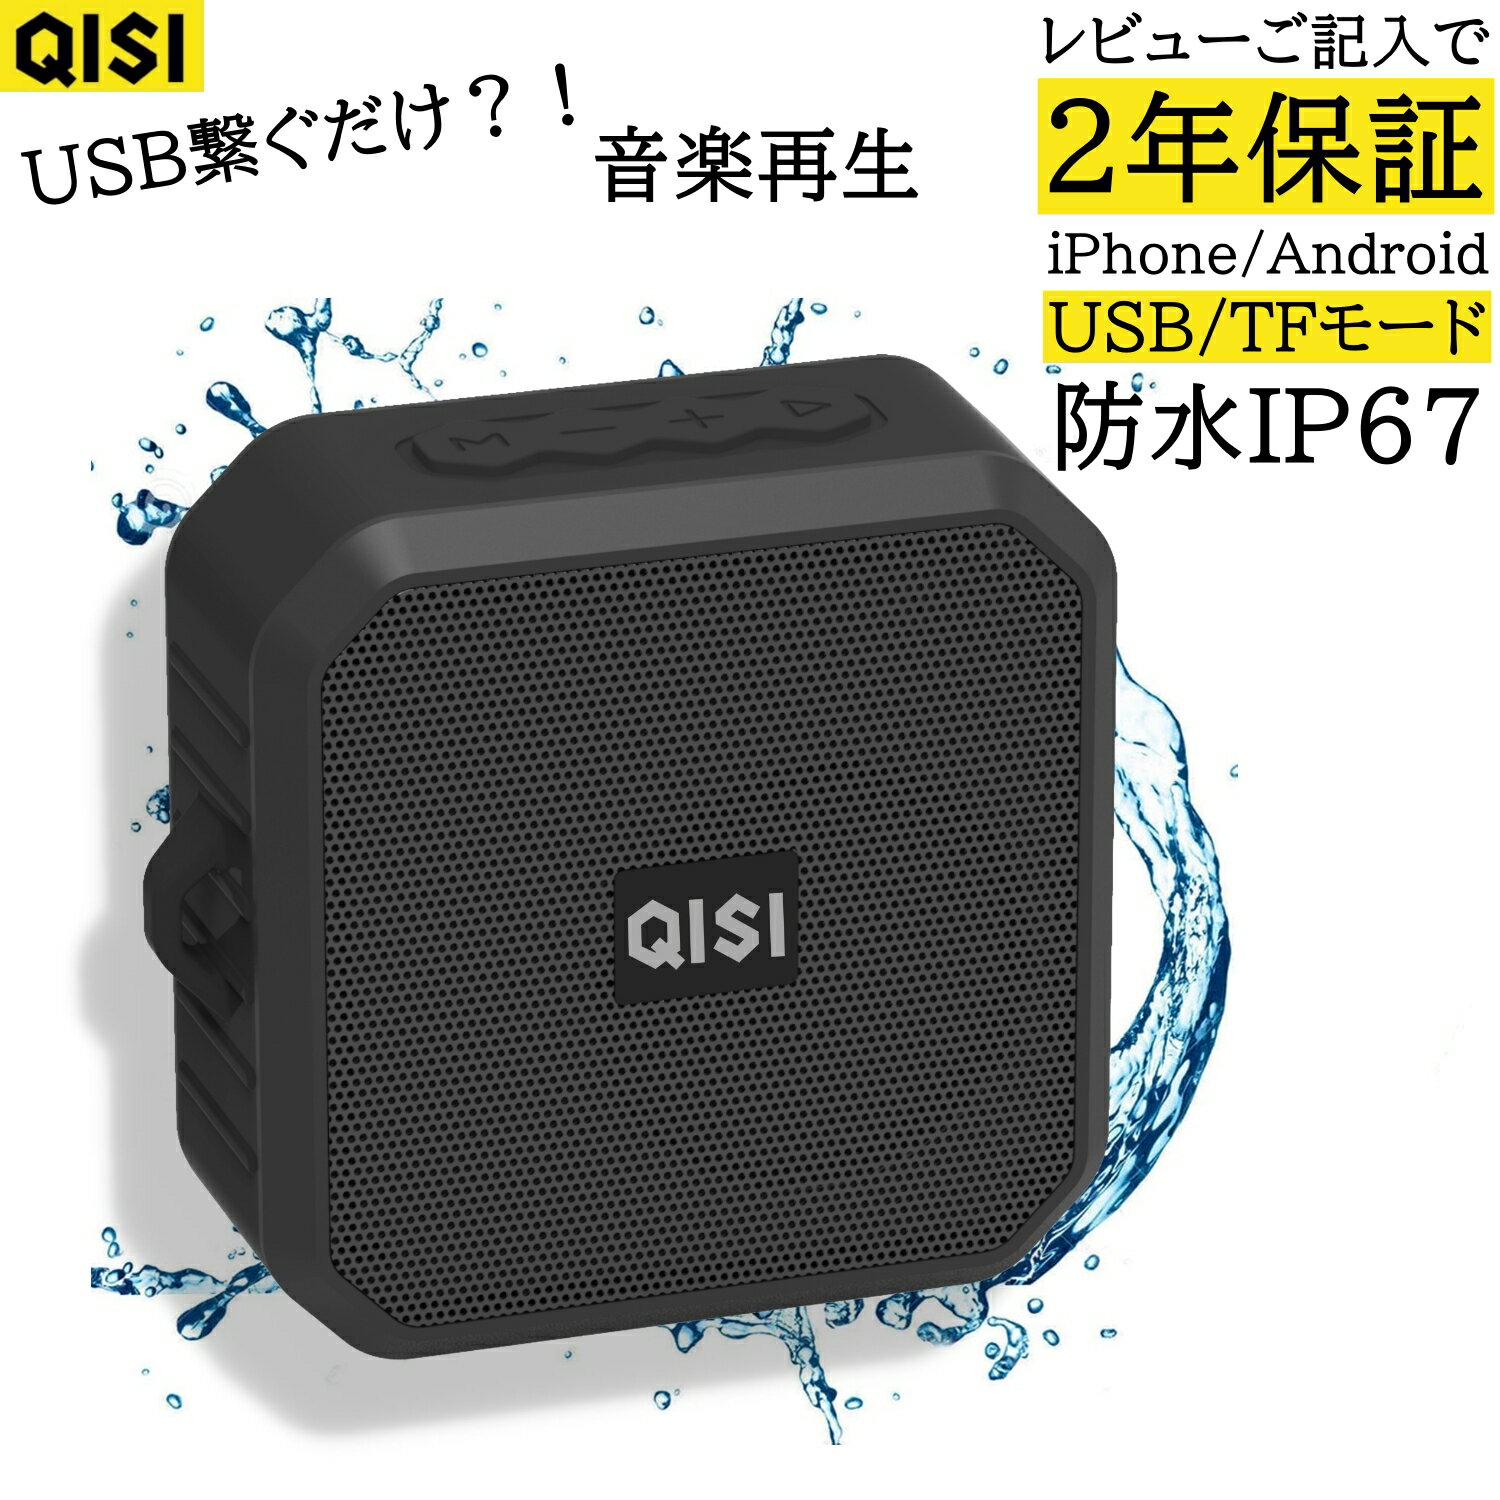 ラジオ機能搭載 ワイヤレス スピーカー ポータブル QISI Bluetooth IP67 防水耐衝撃 お風呂場 キャンプ 大容量バッテリー 最大5時間連続再生 コンパクト TFカード USB音楽再生機能 内蔵 USB充…